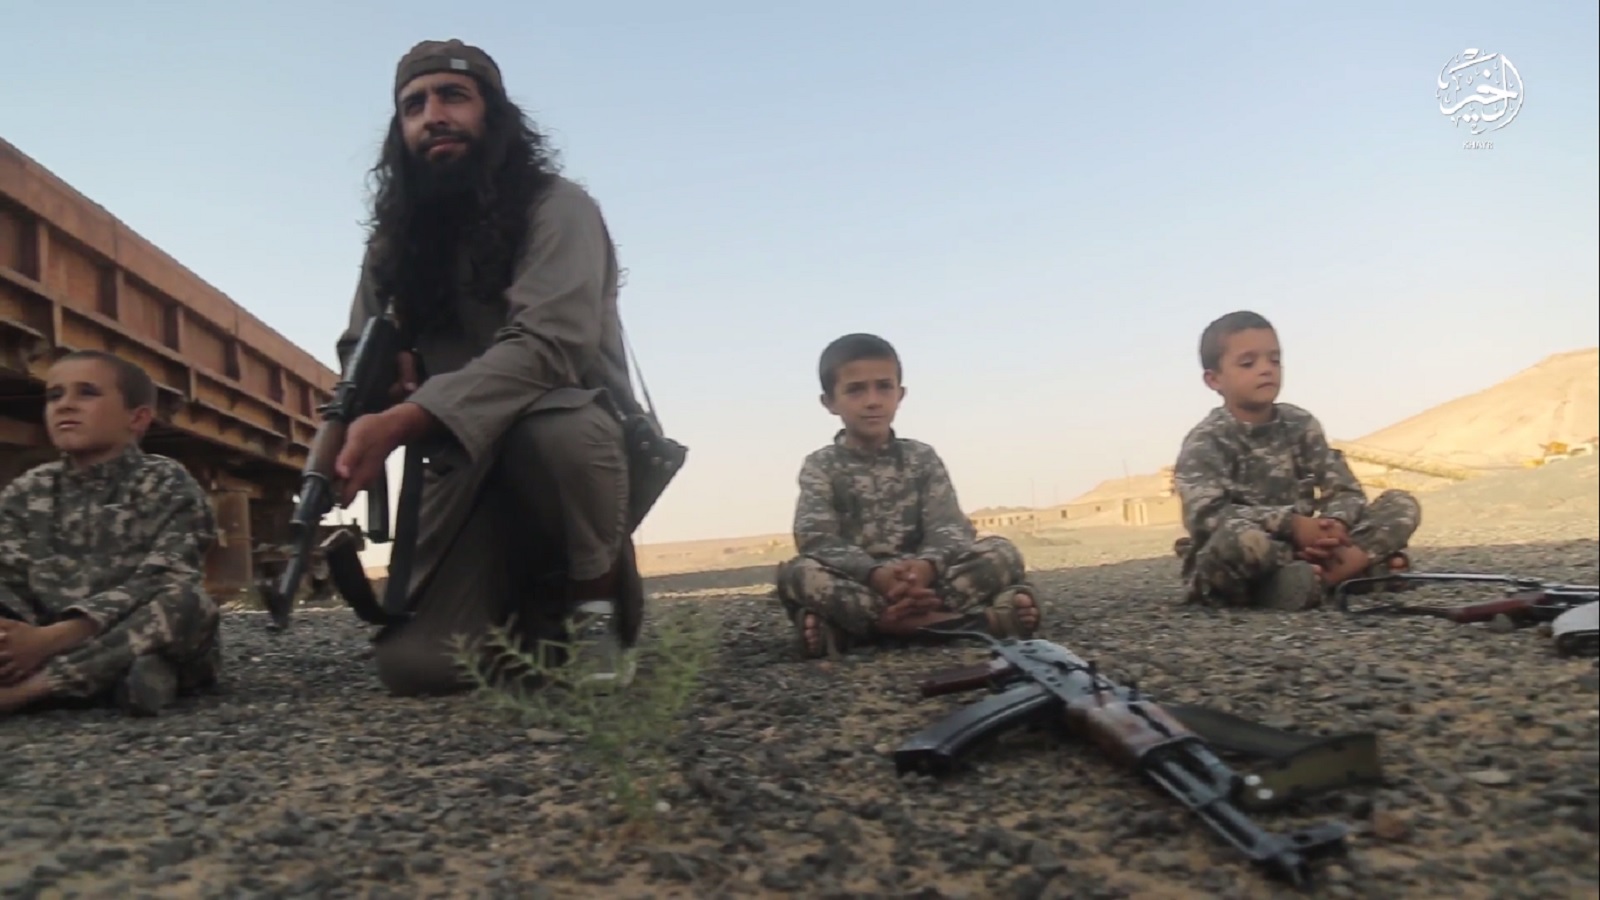 إعداد الجيل الثاني من "داعش" في معسكرات "أشبال الخلافة"